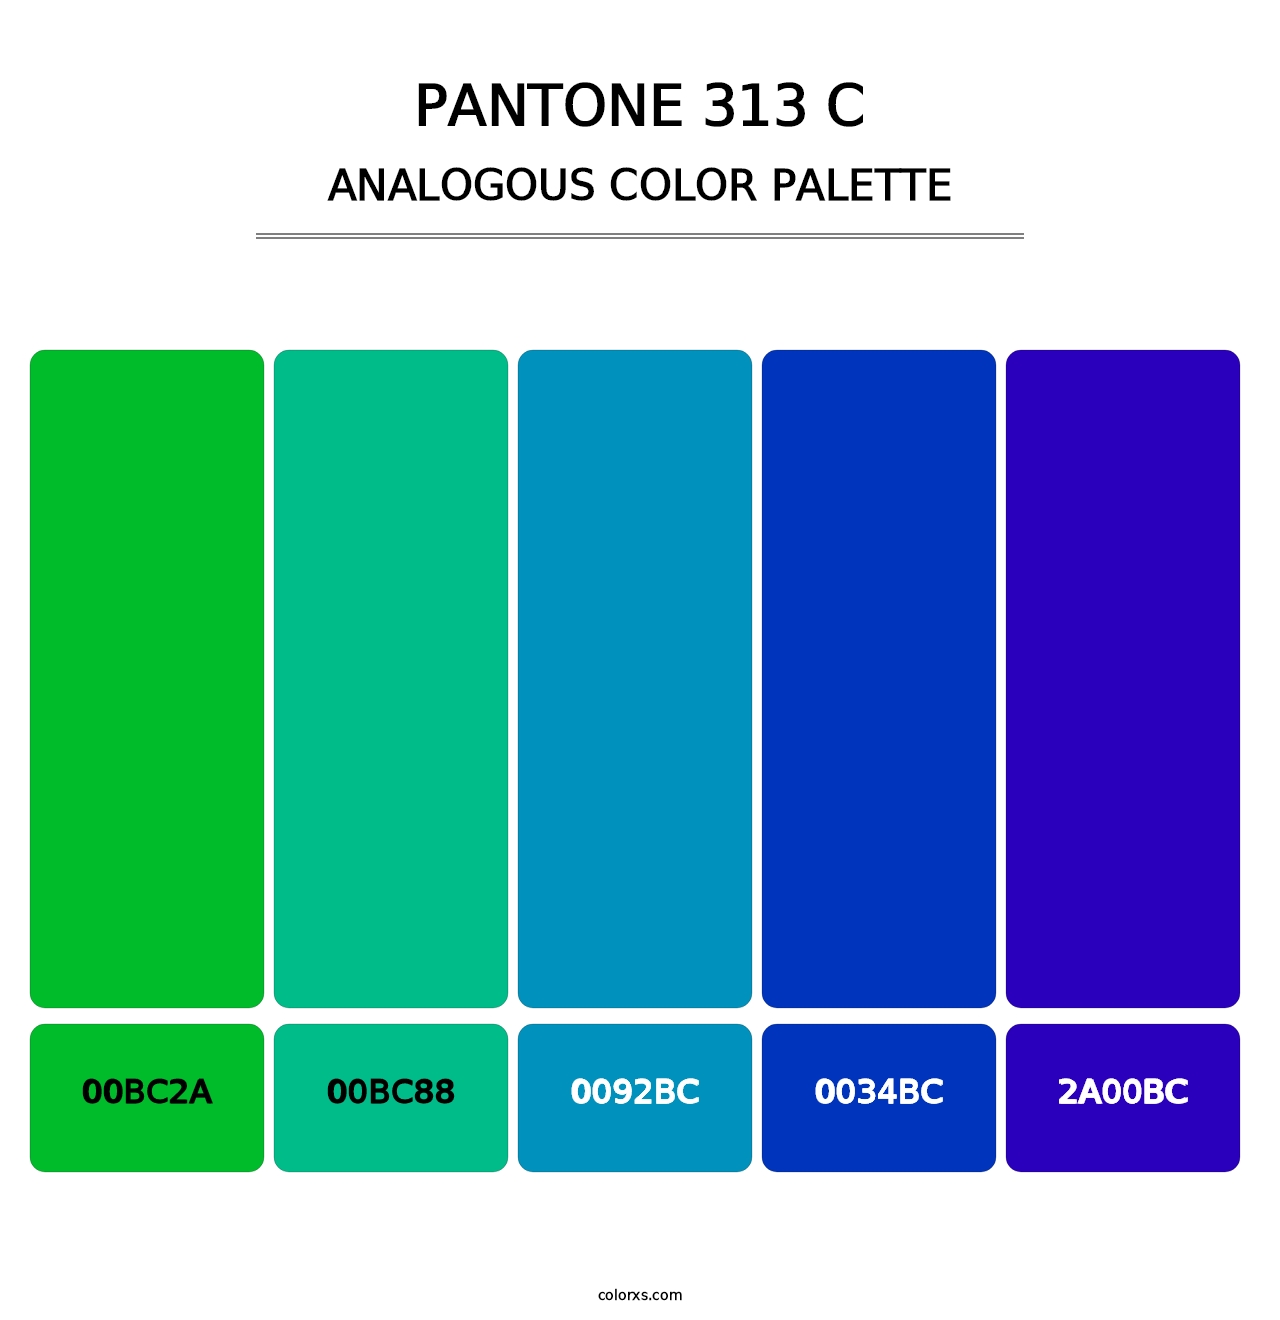 PANTONE 313 C - Analogous Color Palette